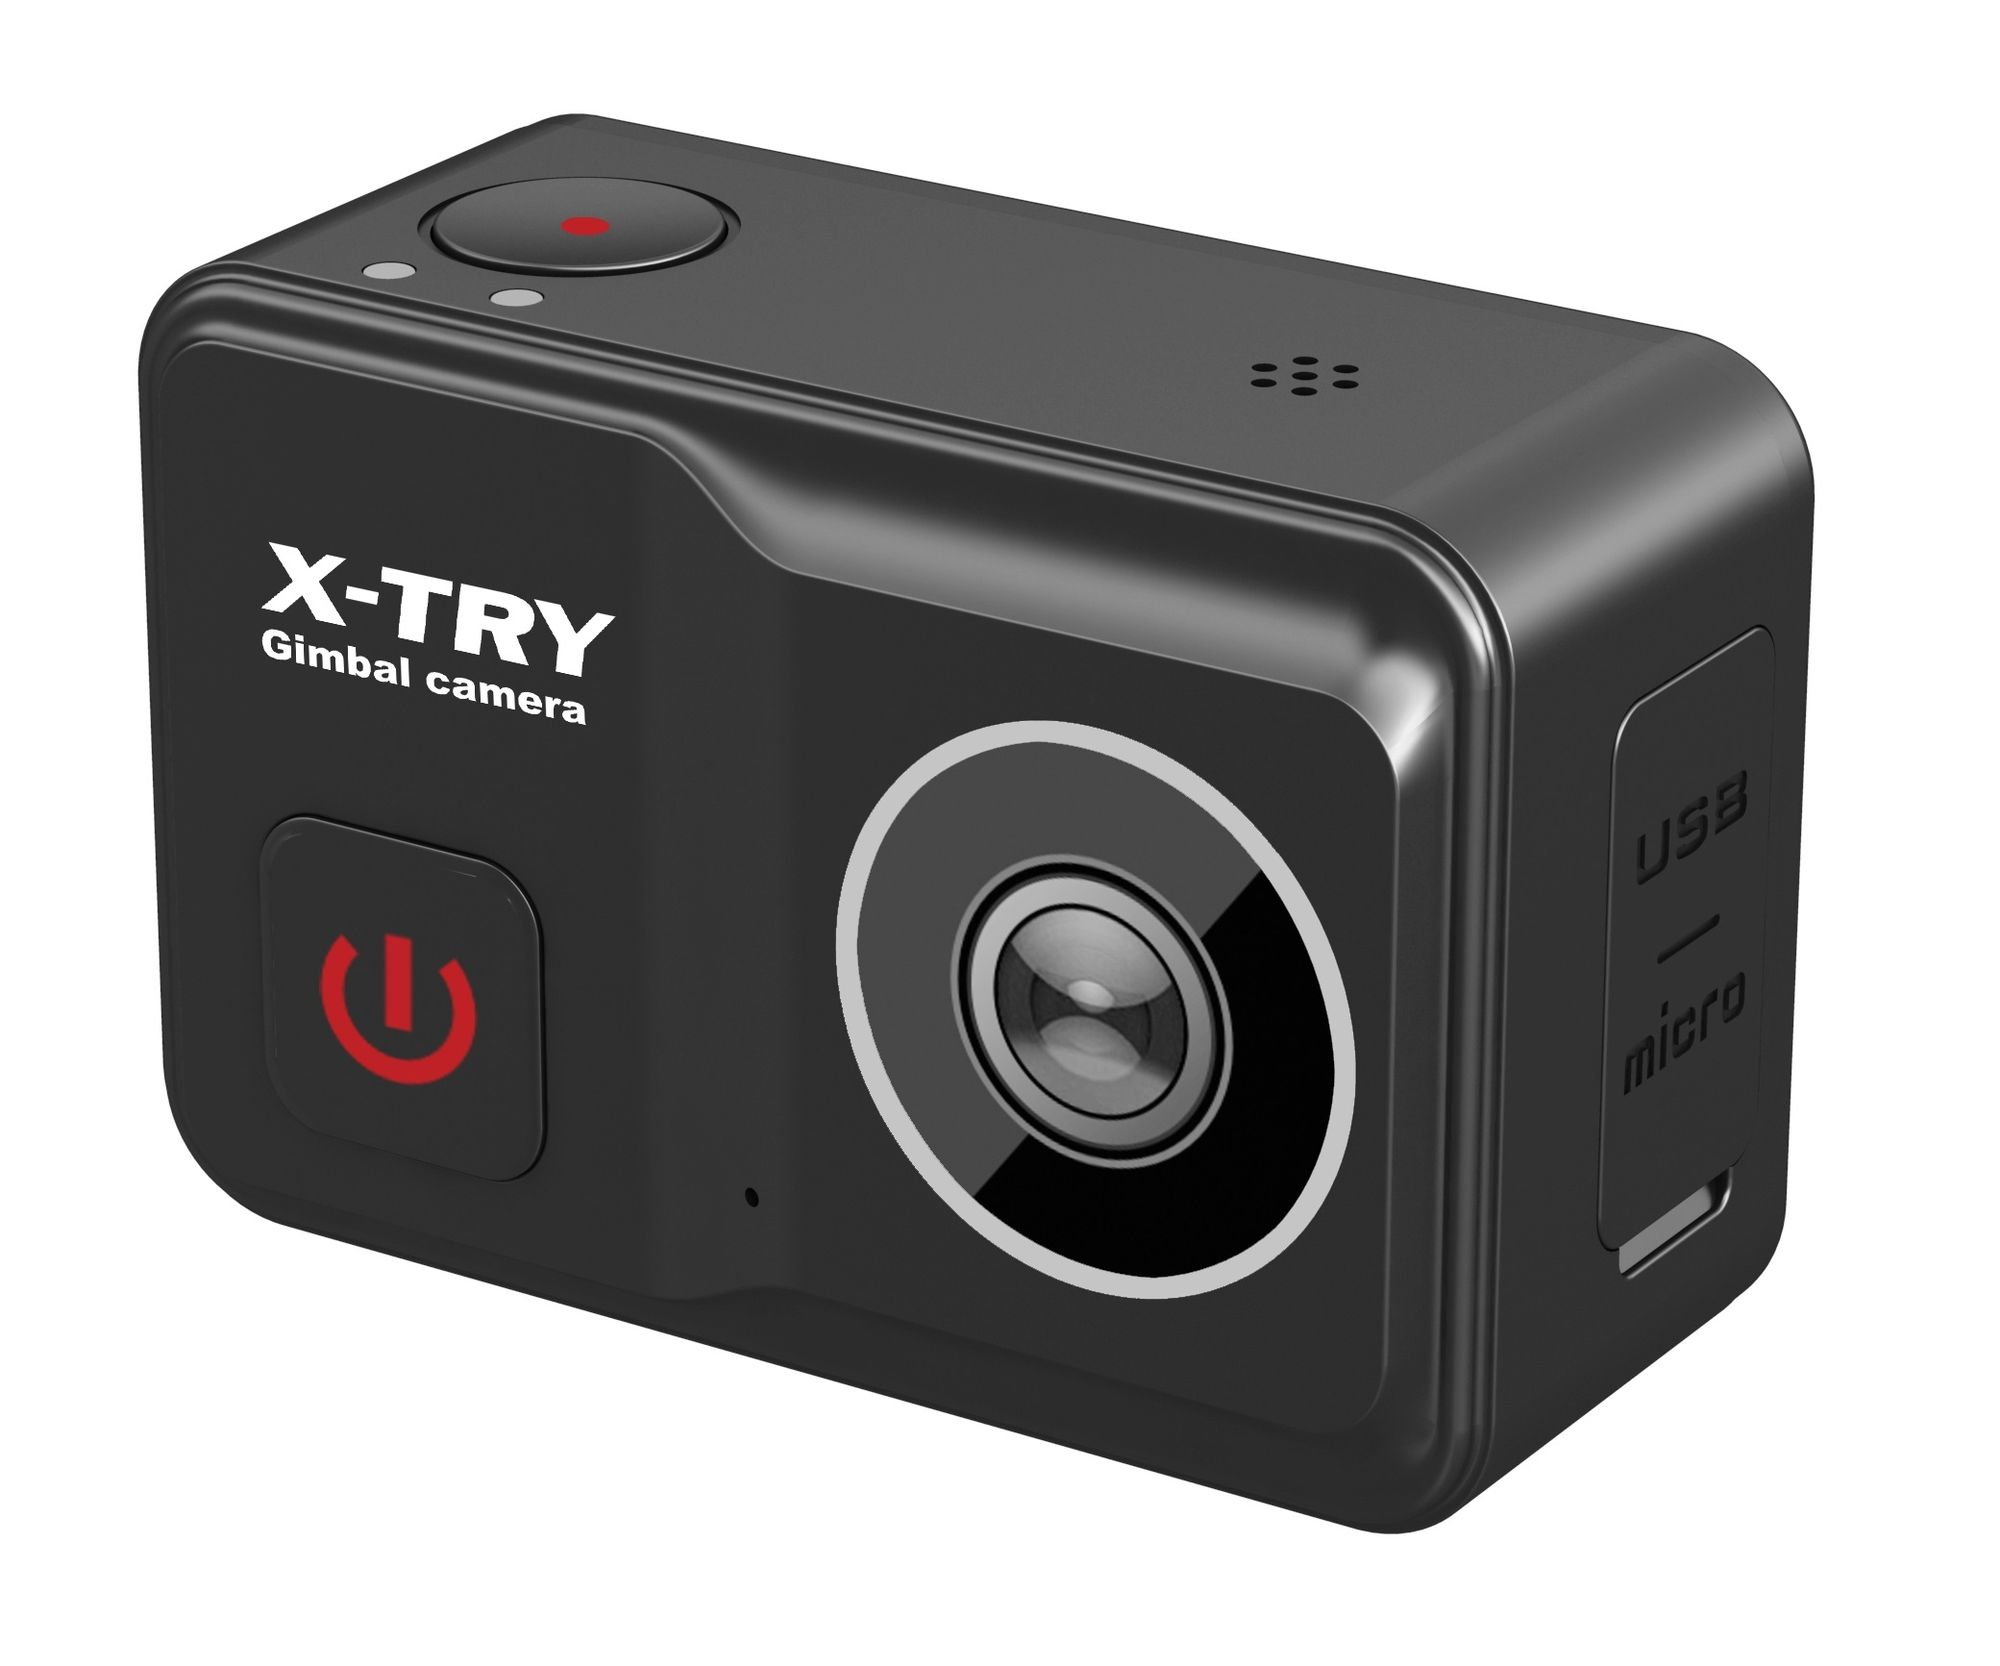 Экшн камера X-Try XTC502 Gimbal Real 4K/60FPS WDR Wi-Fi Power экшн камера x try xtc264 real 4k wi fi maximal